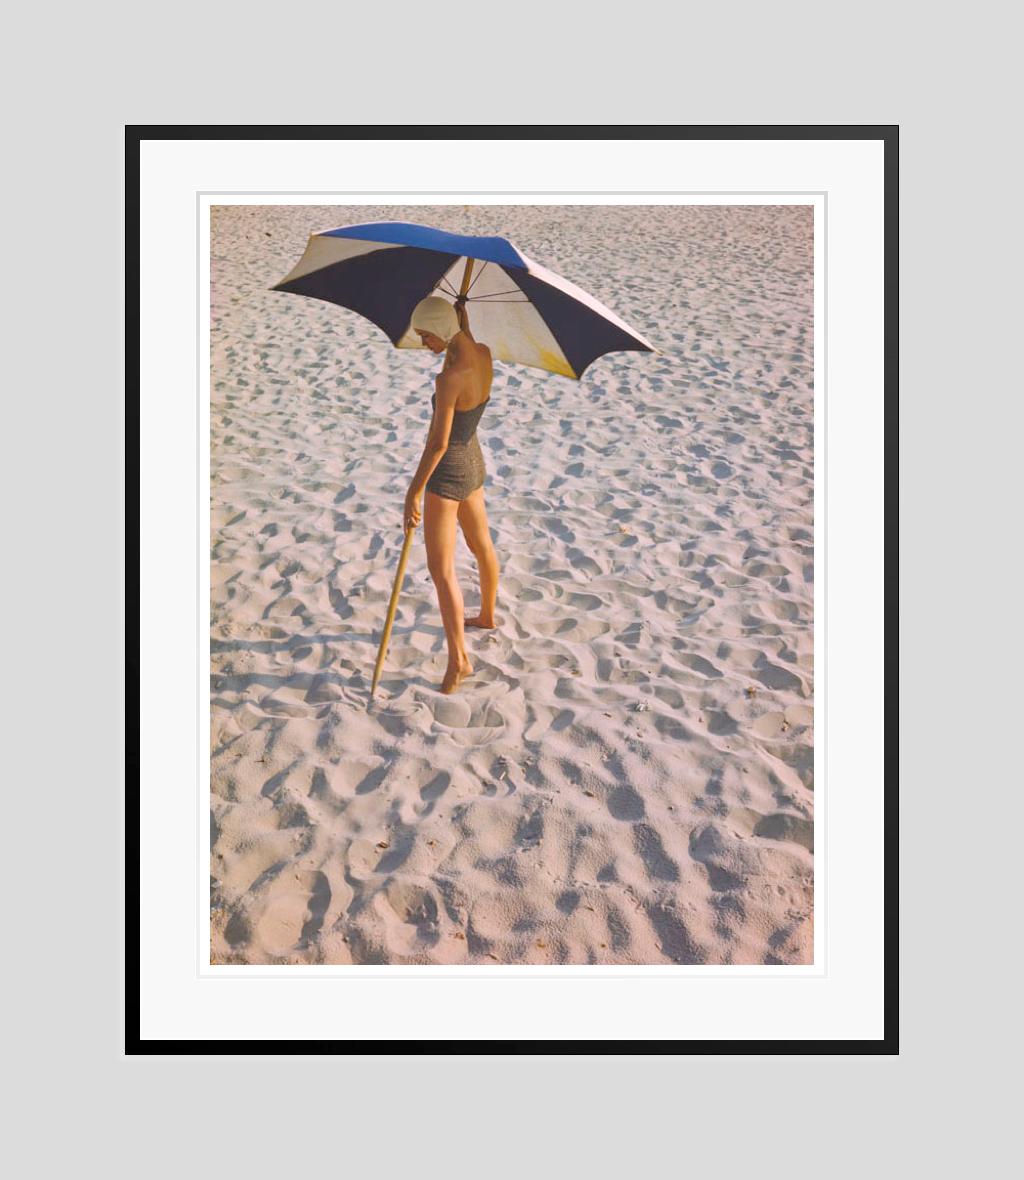 La fille de la plage 

1948

Séance de photos de mode pour les vêtements de plage avec des parasols, 1948.

par Toni Frissell

16 x 20